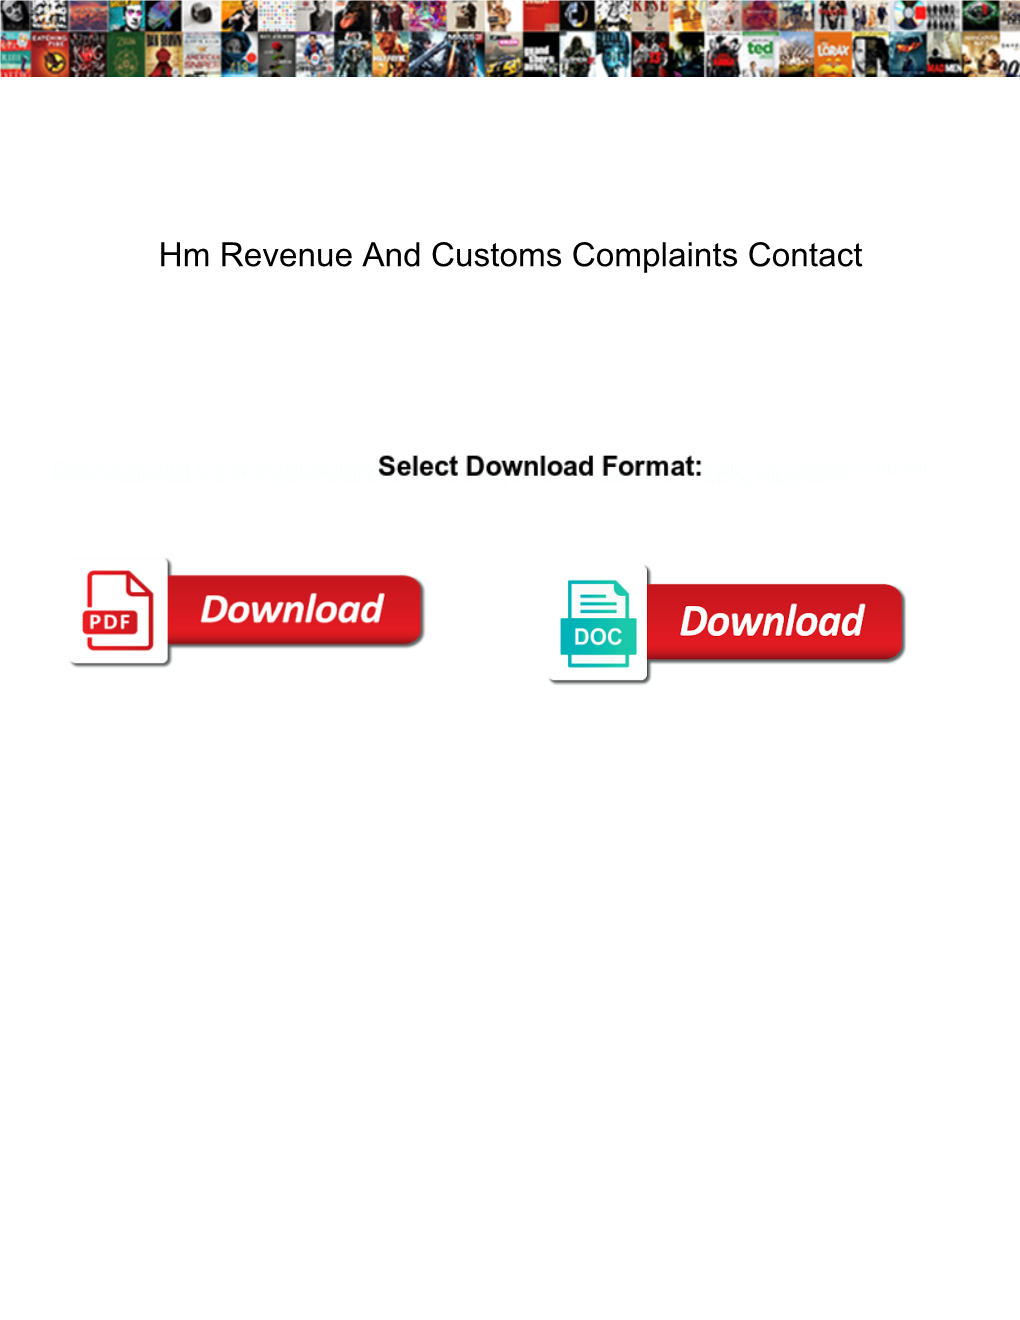 Hm Revenue and Customs Complaints Contact